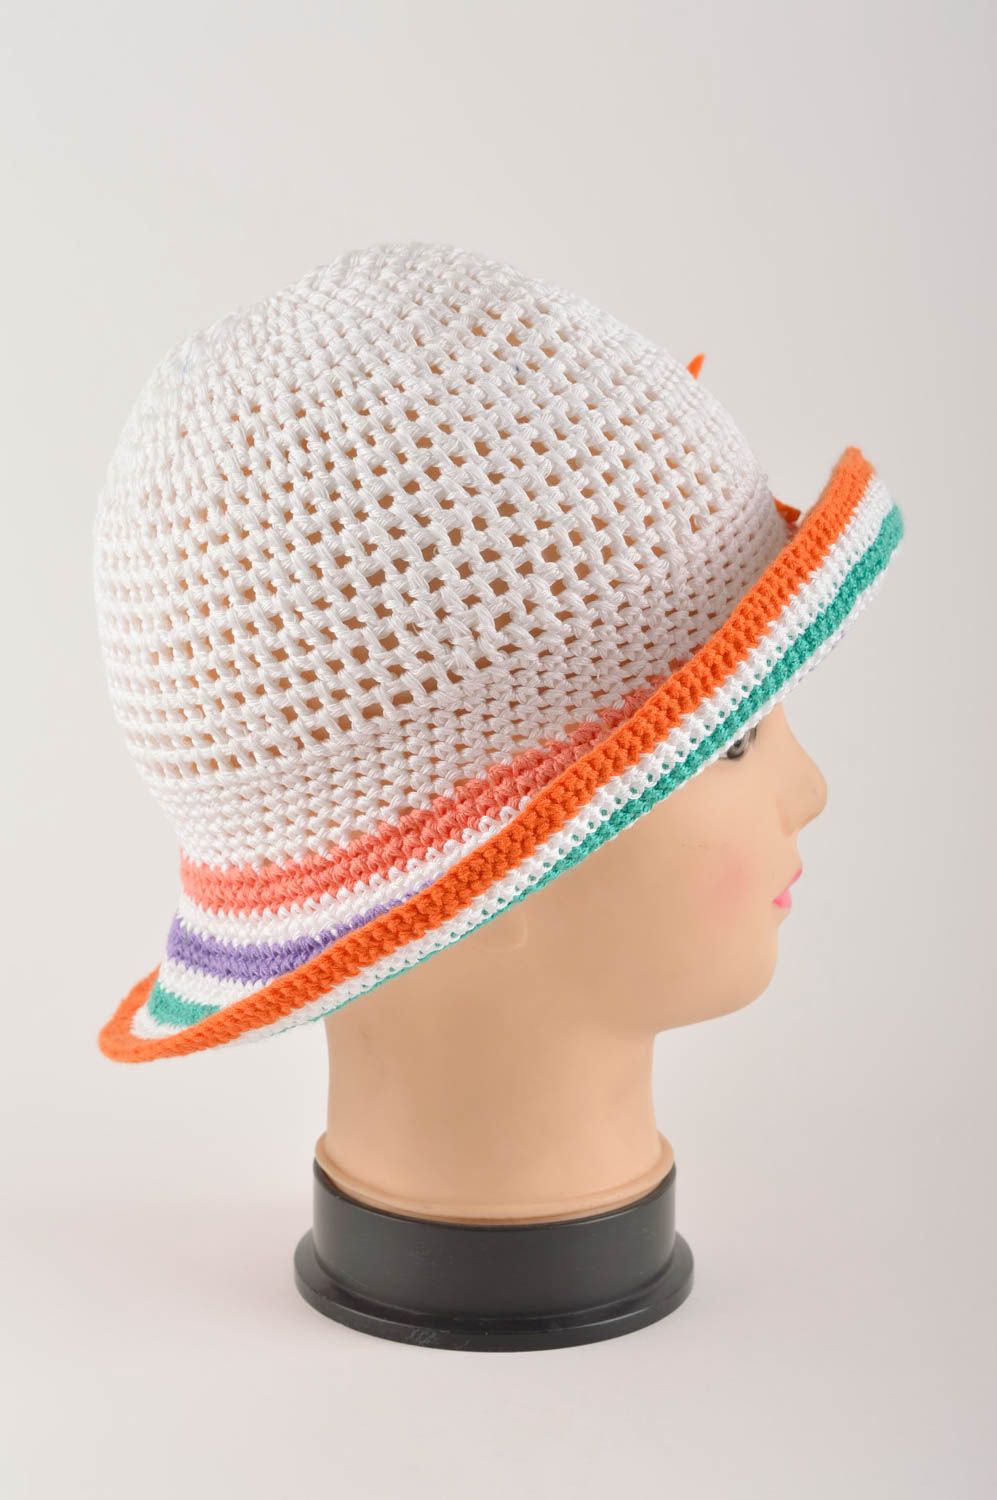 Handmade hat summer hat gift ideas designer cap summer headwear designer hat photo 3